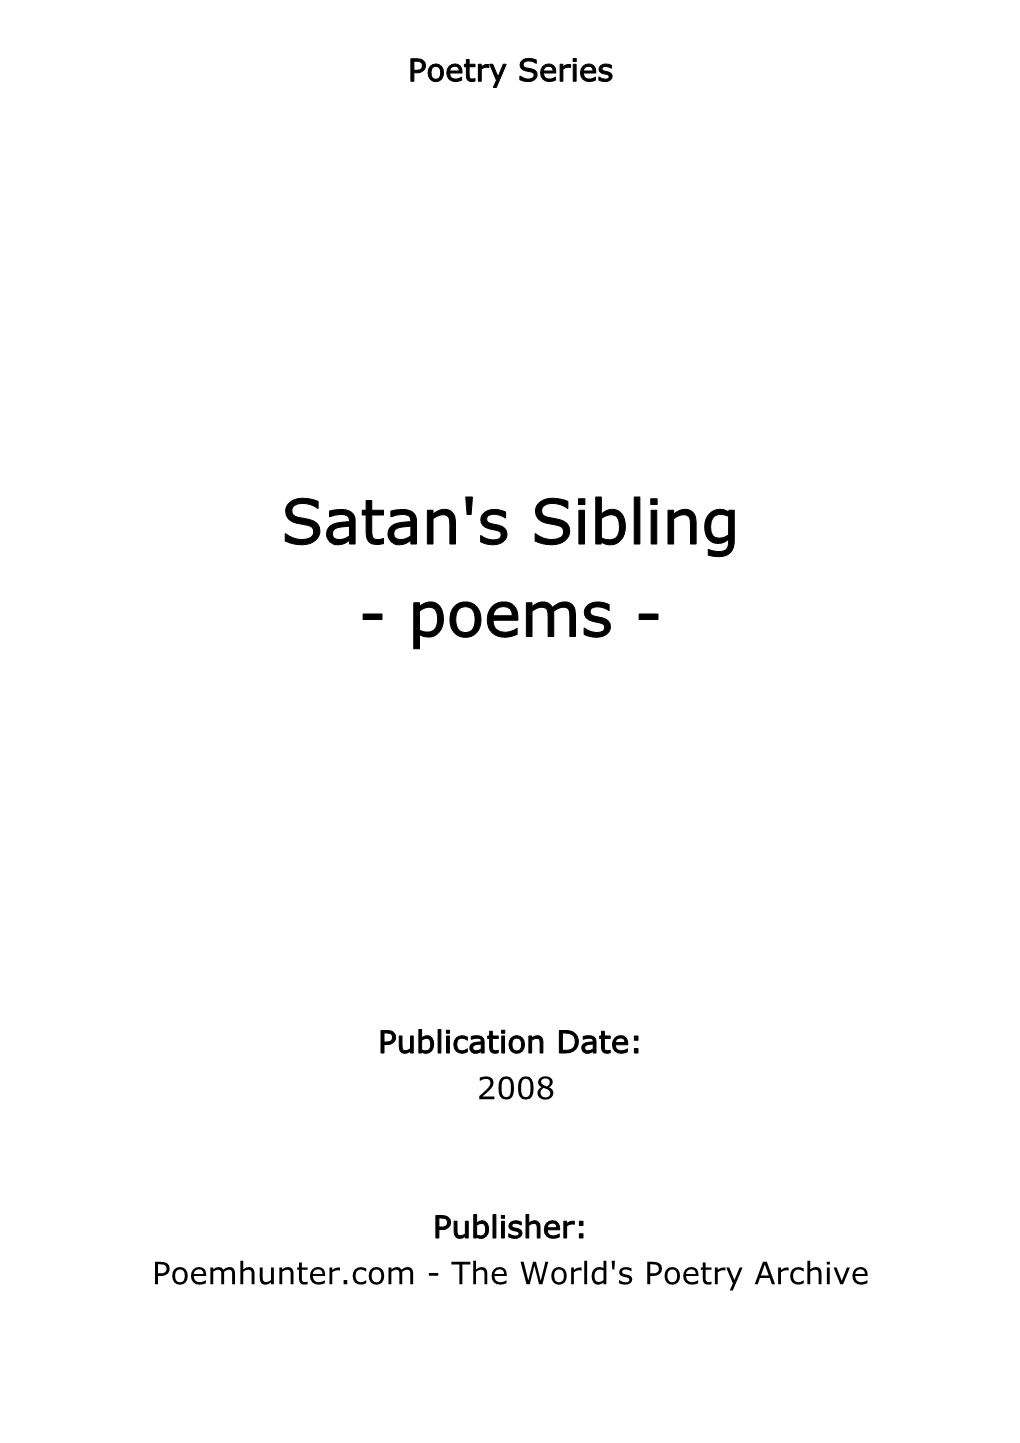 Satan's Sibling - Poems